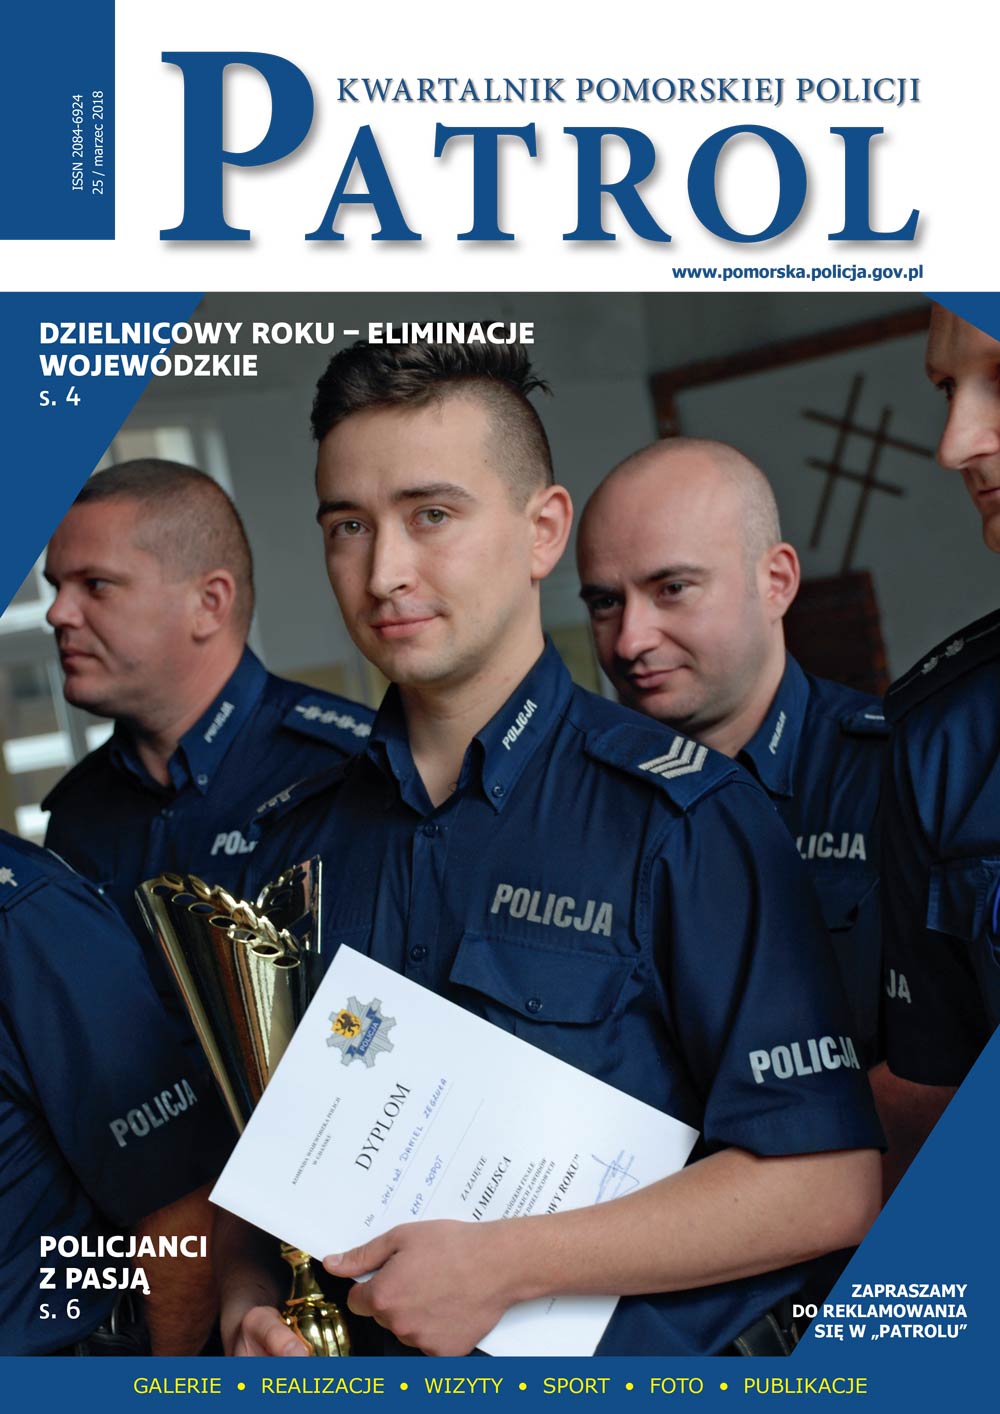 [2018, 01] PATROL. KWARTALNIK POMORSKIEJ POLICJI. - 2018, [nr] 25 / marzec, www.pomorska.policja.gov.pl